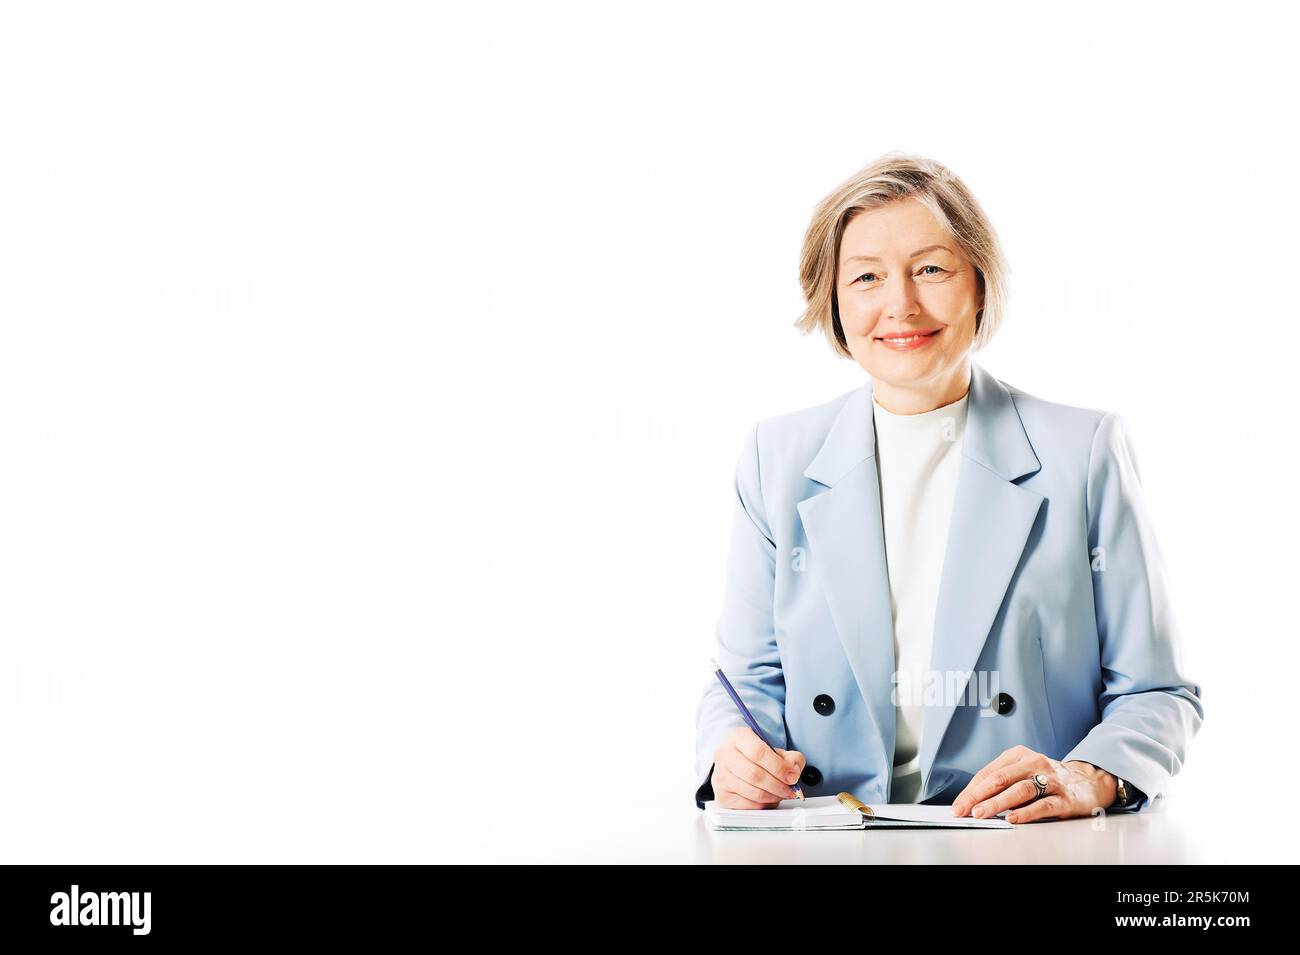 Portrait de studio d'une femme d'âge moyen posant sur fond blanc, assise au bureau et prenant des notes Banque D'Images